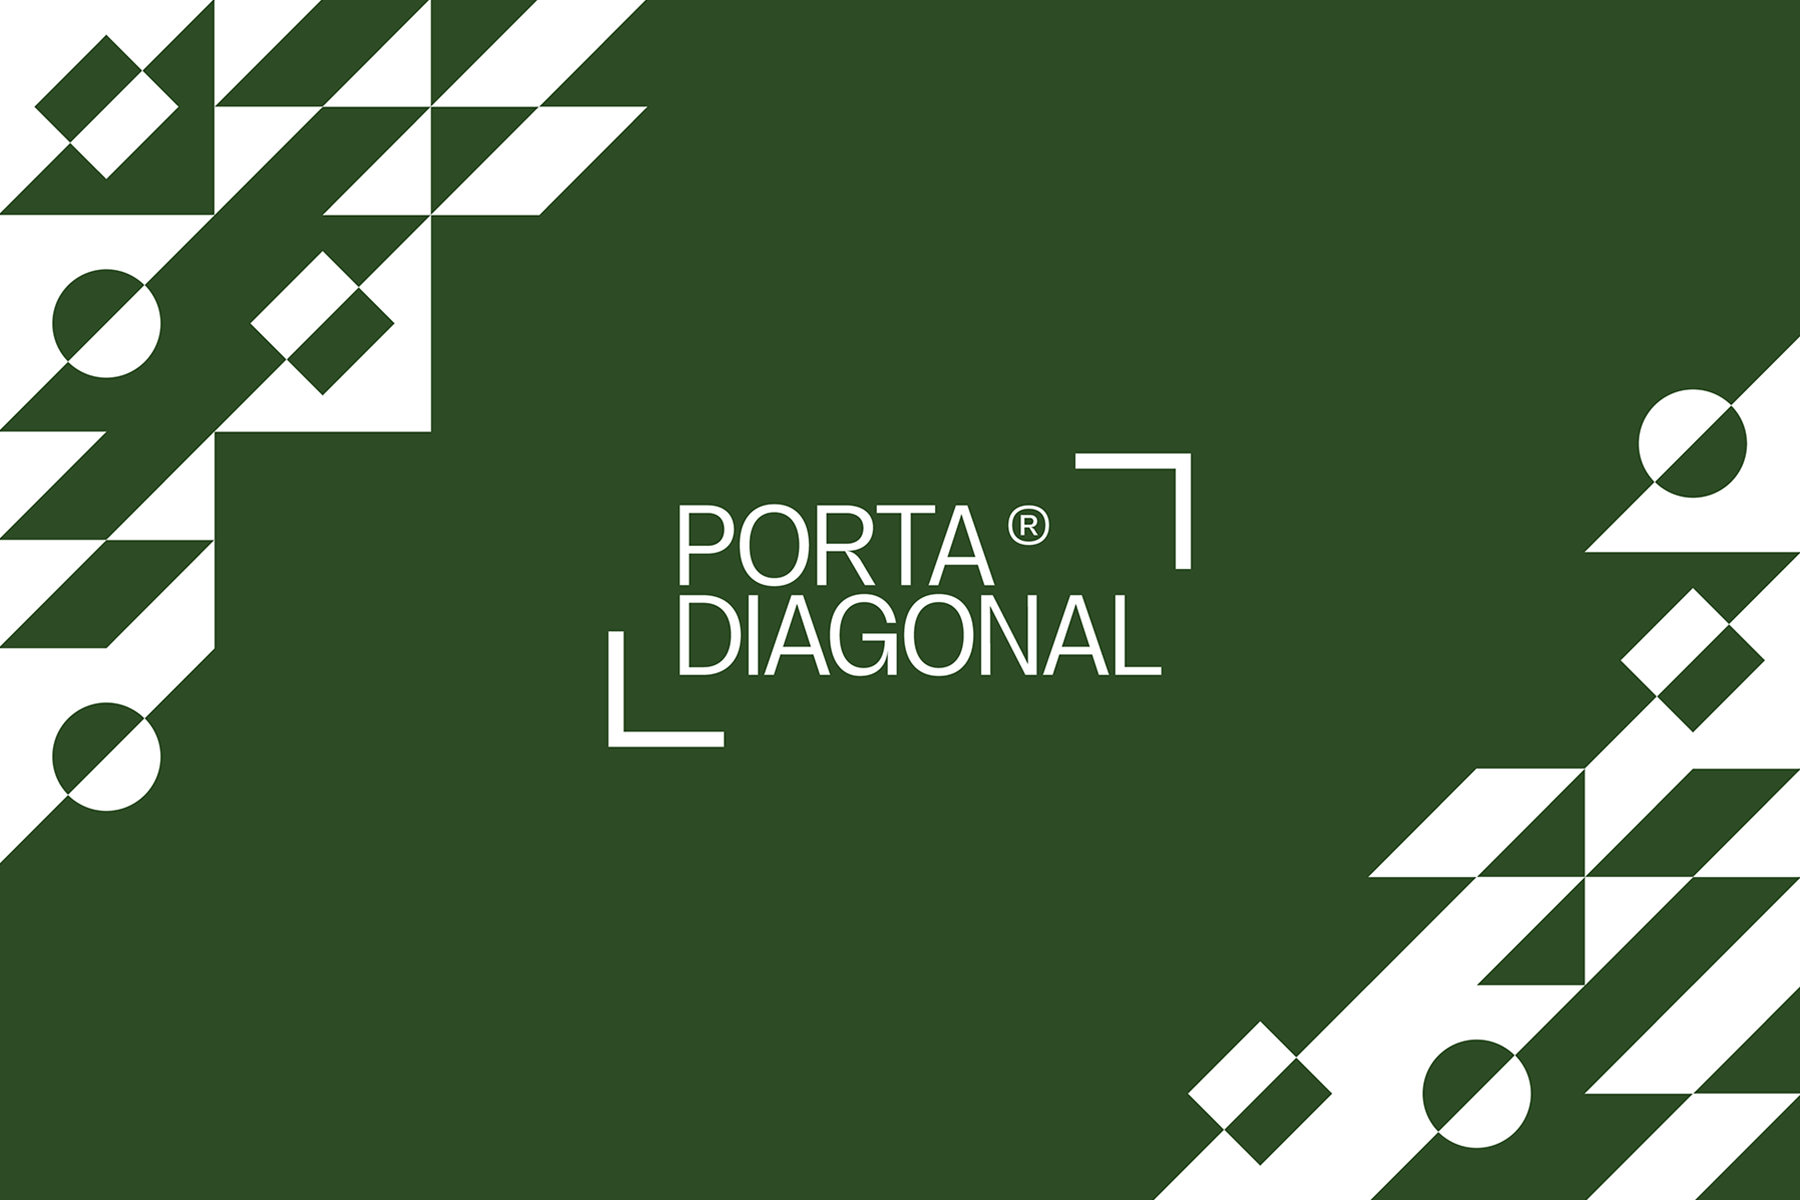 Protected: Porta Diagonal